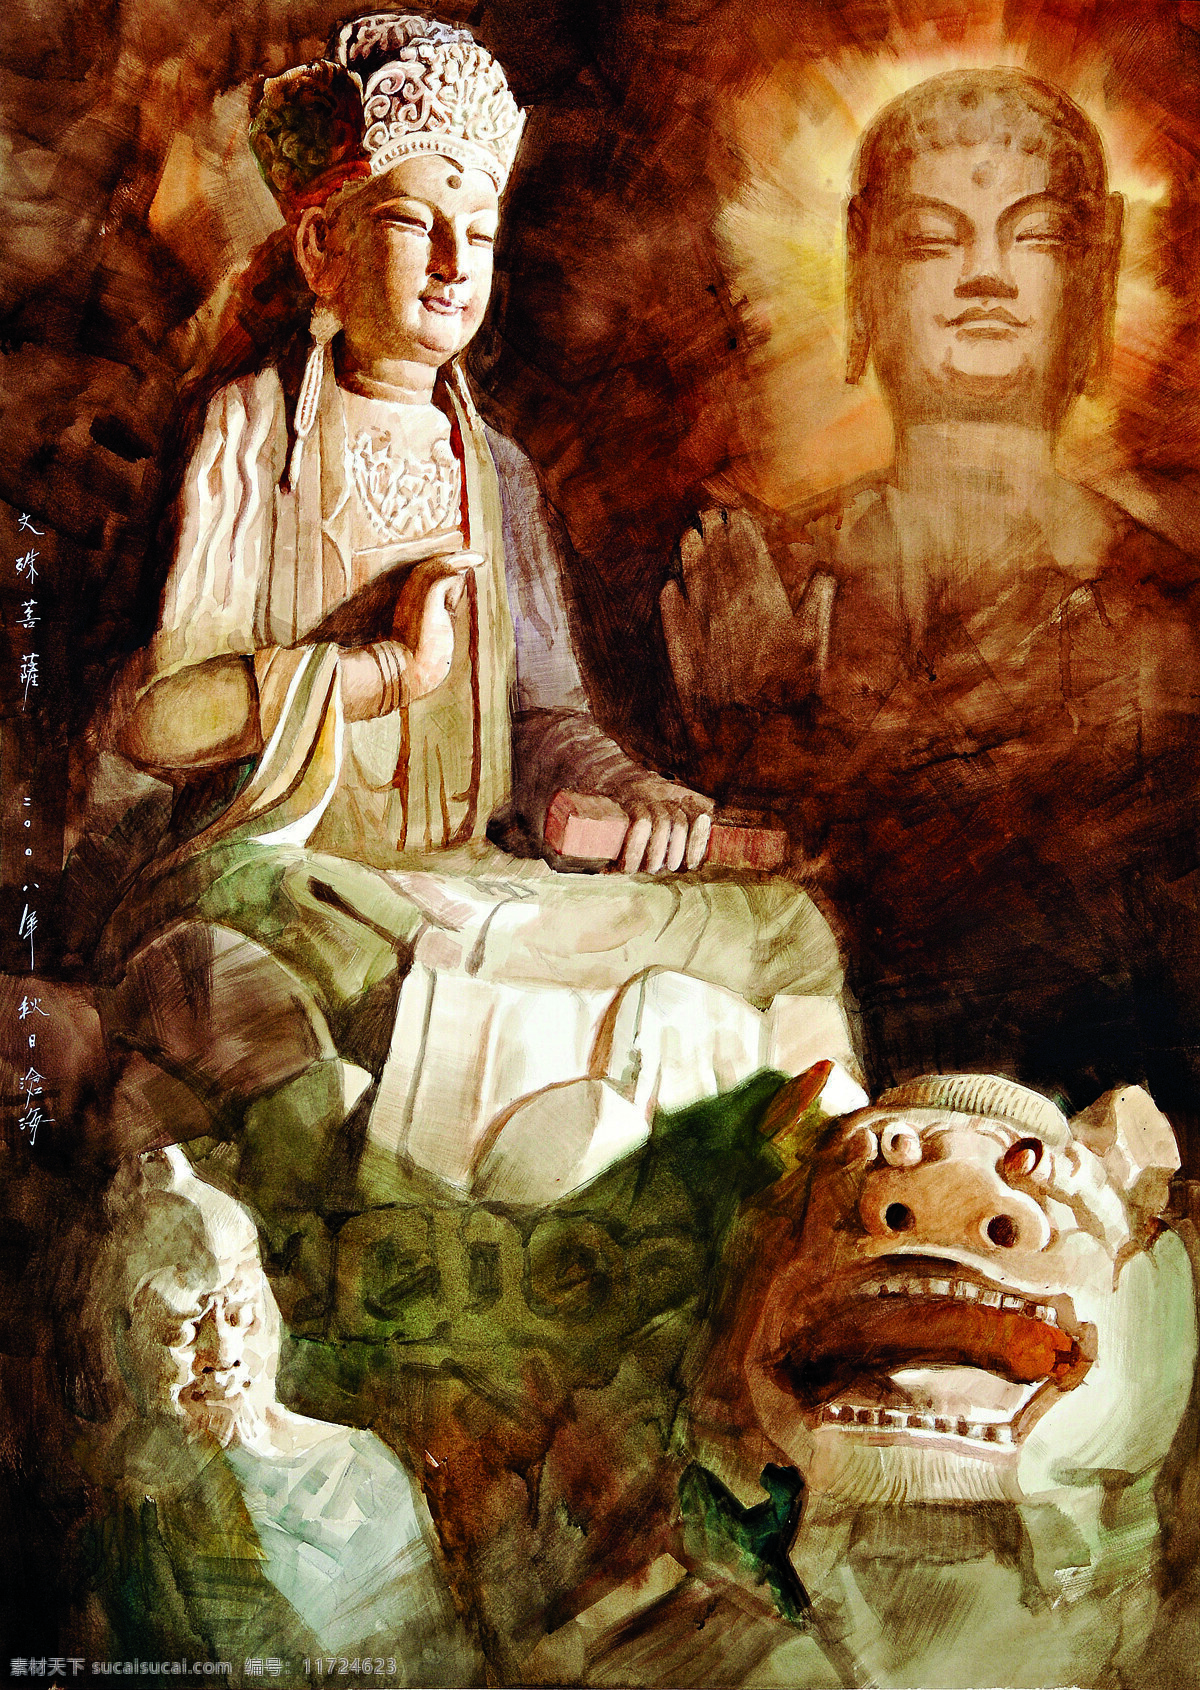 观音菩萨 佛祖 油画 壁画 菩萨 文殊菩萨 佛教 宗教信仰 文化艺术